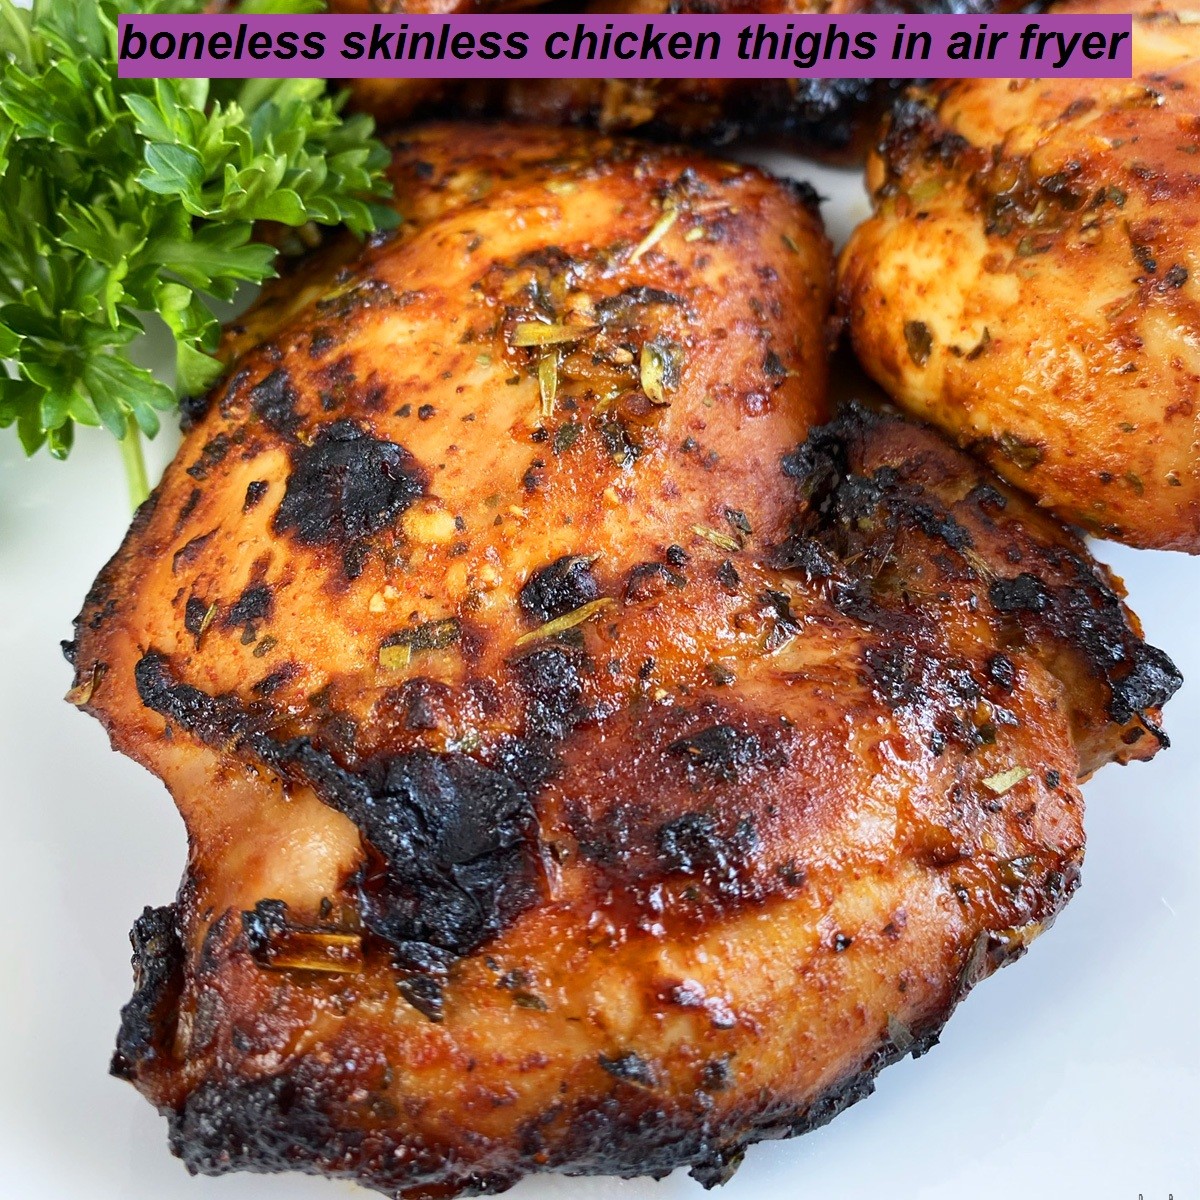 boneless skinless chicken thighs in air fryer